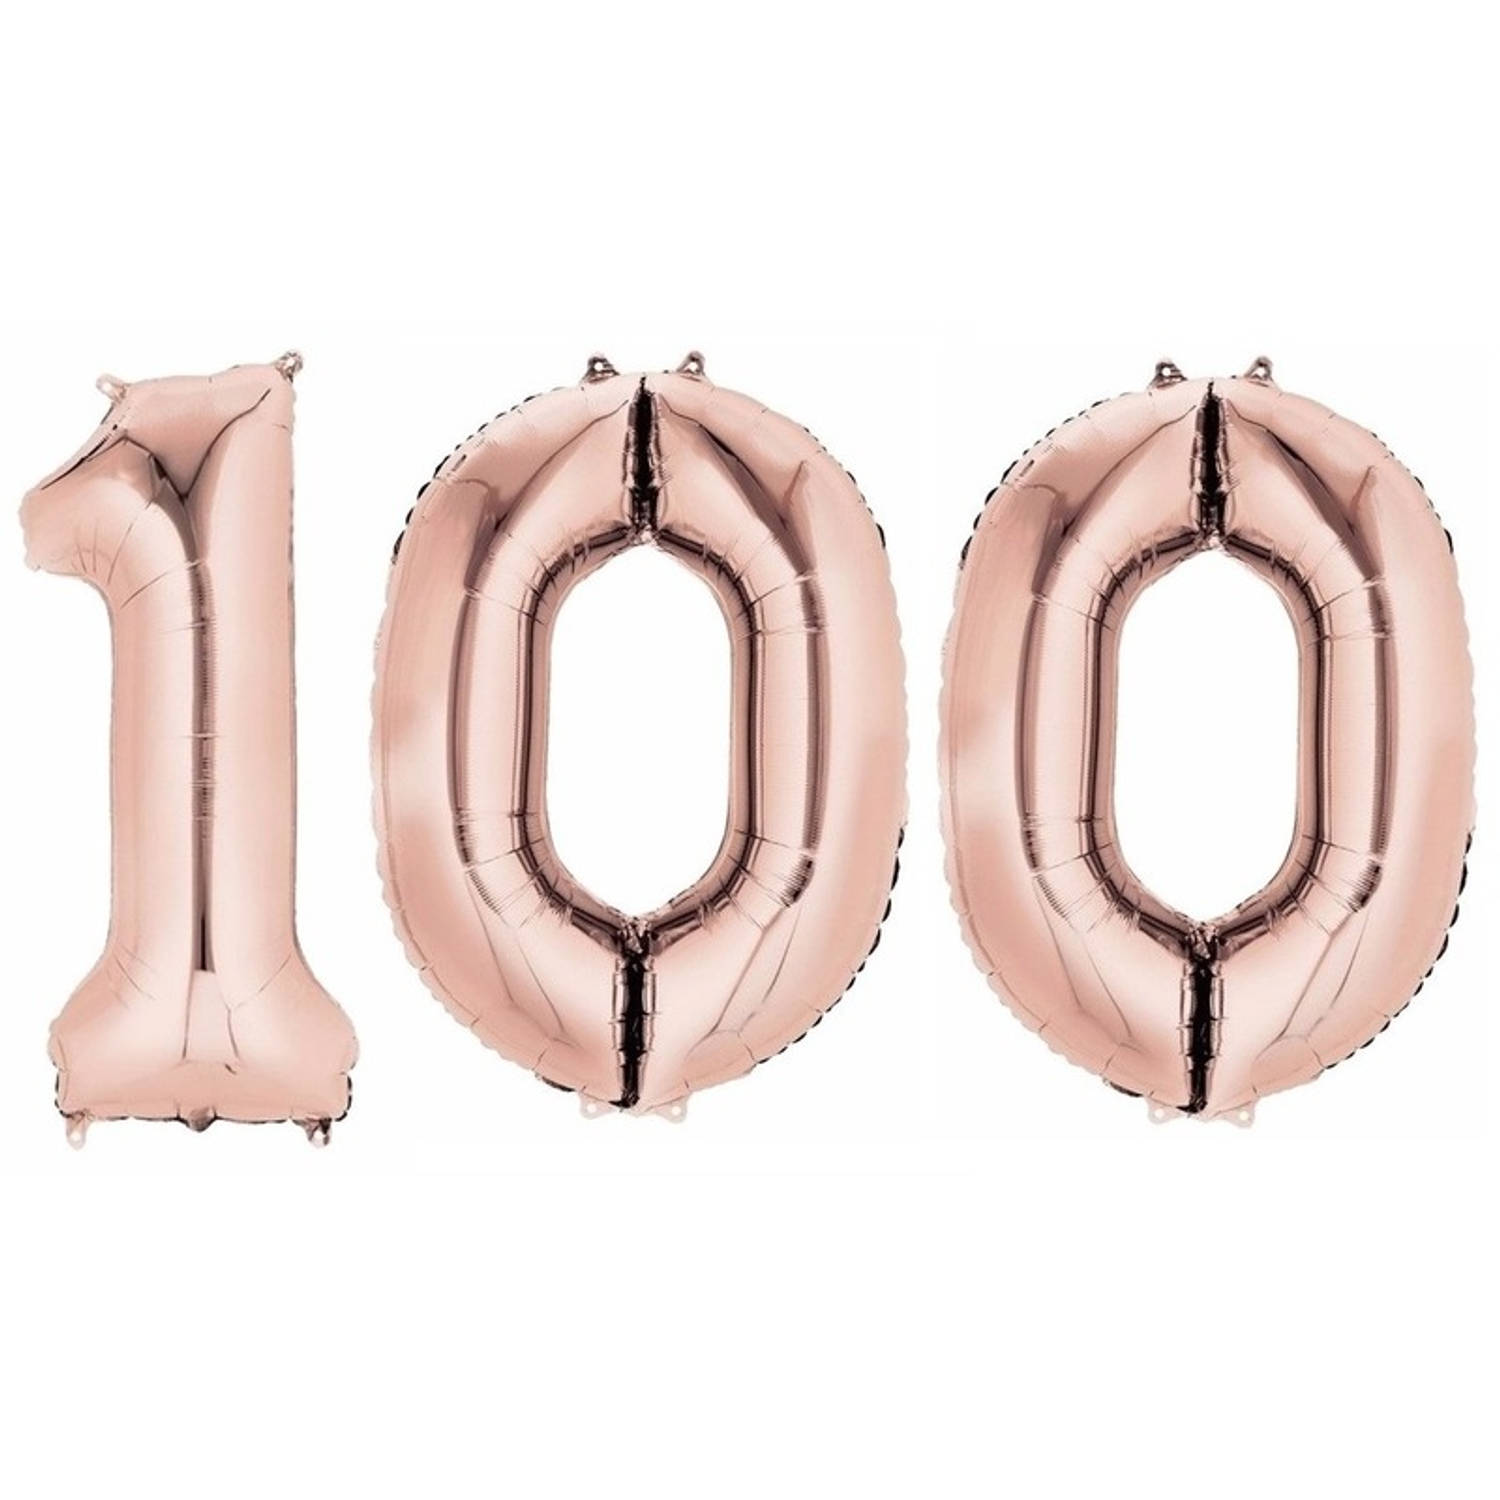 100 jaar leeftijd helium/folie ballonnen rose goud feestversiering - Ballonnen